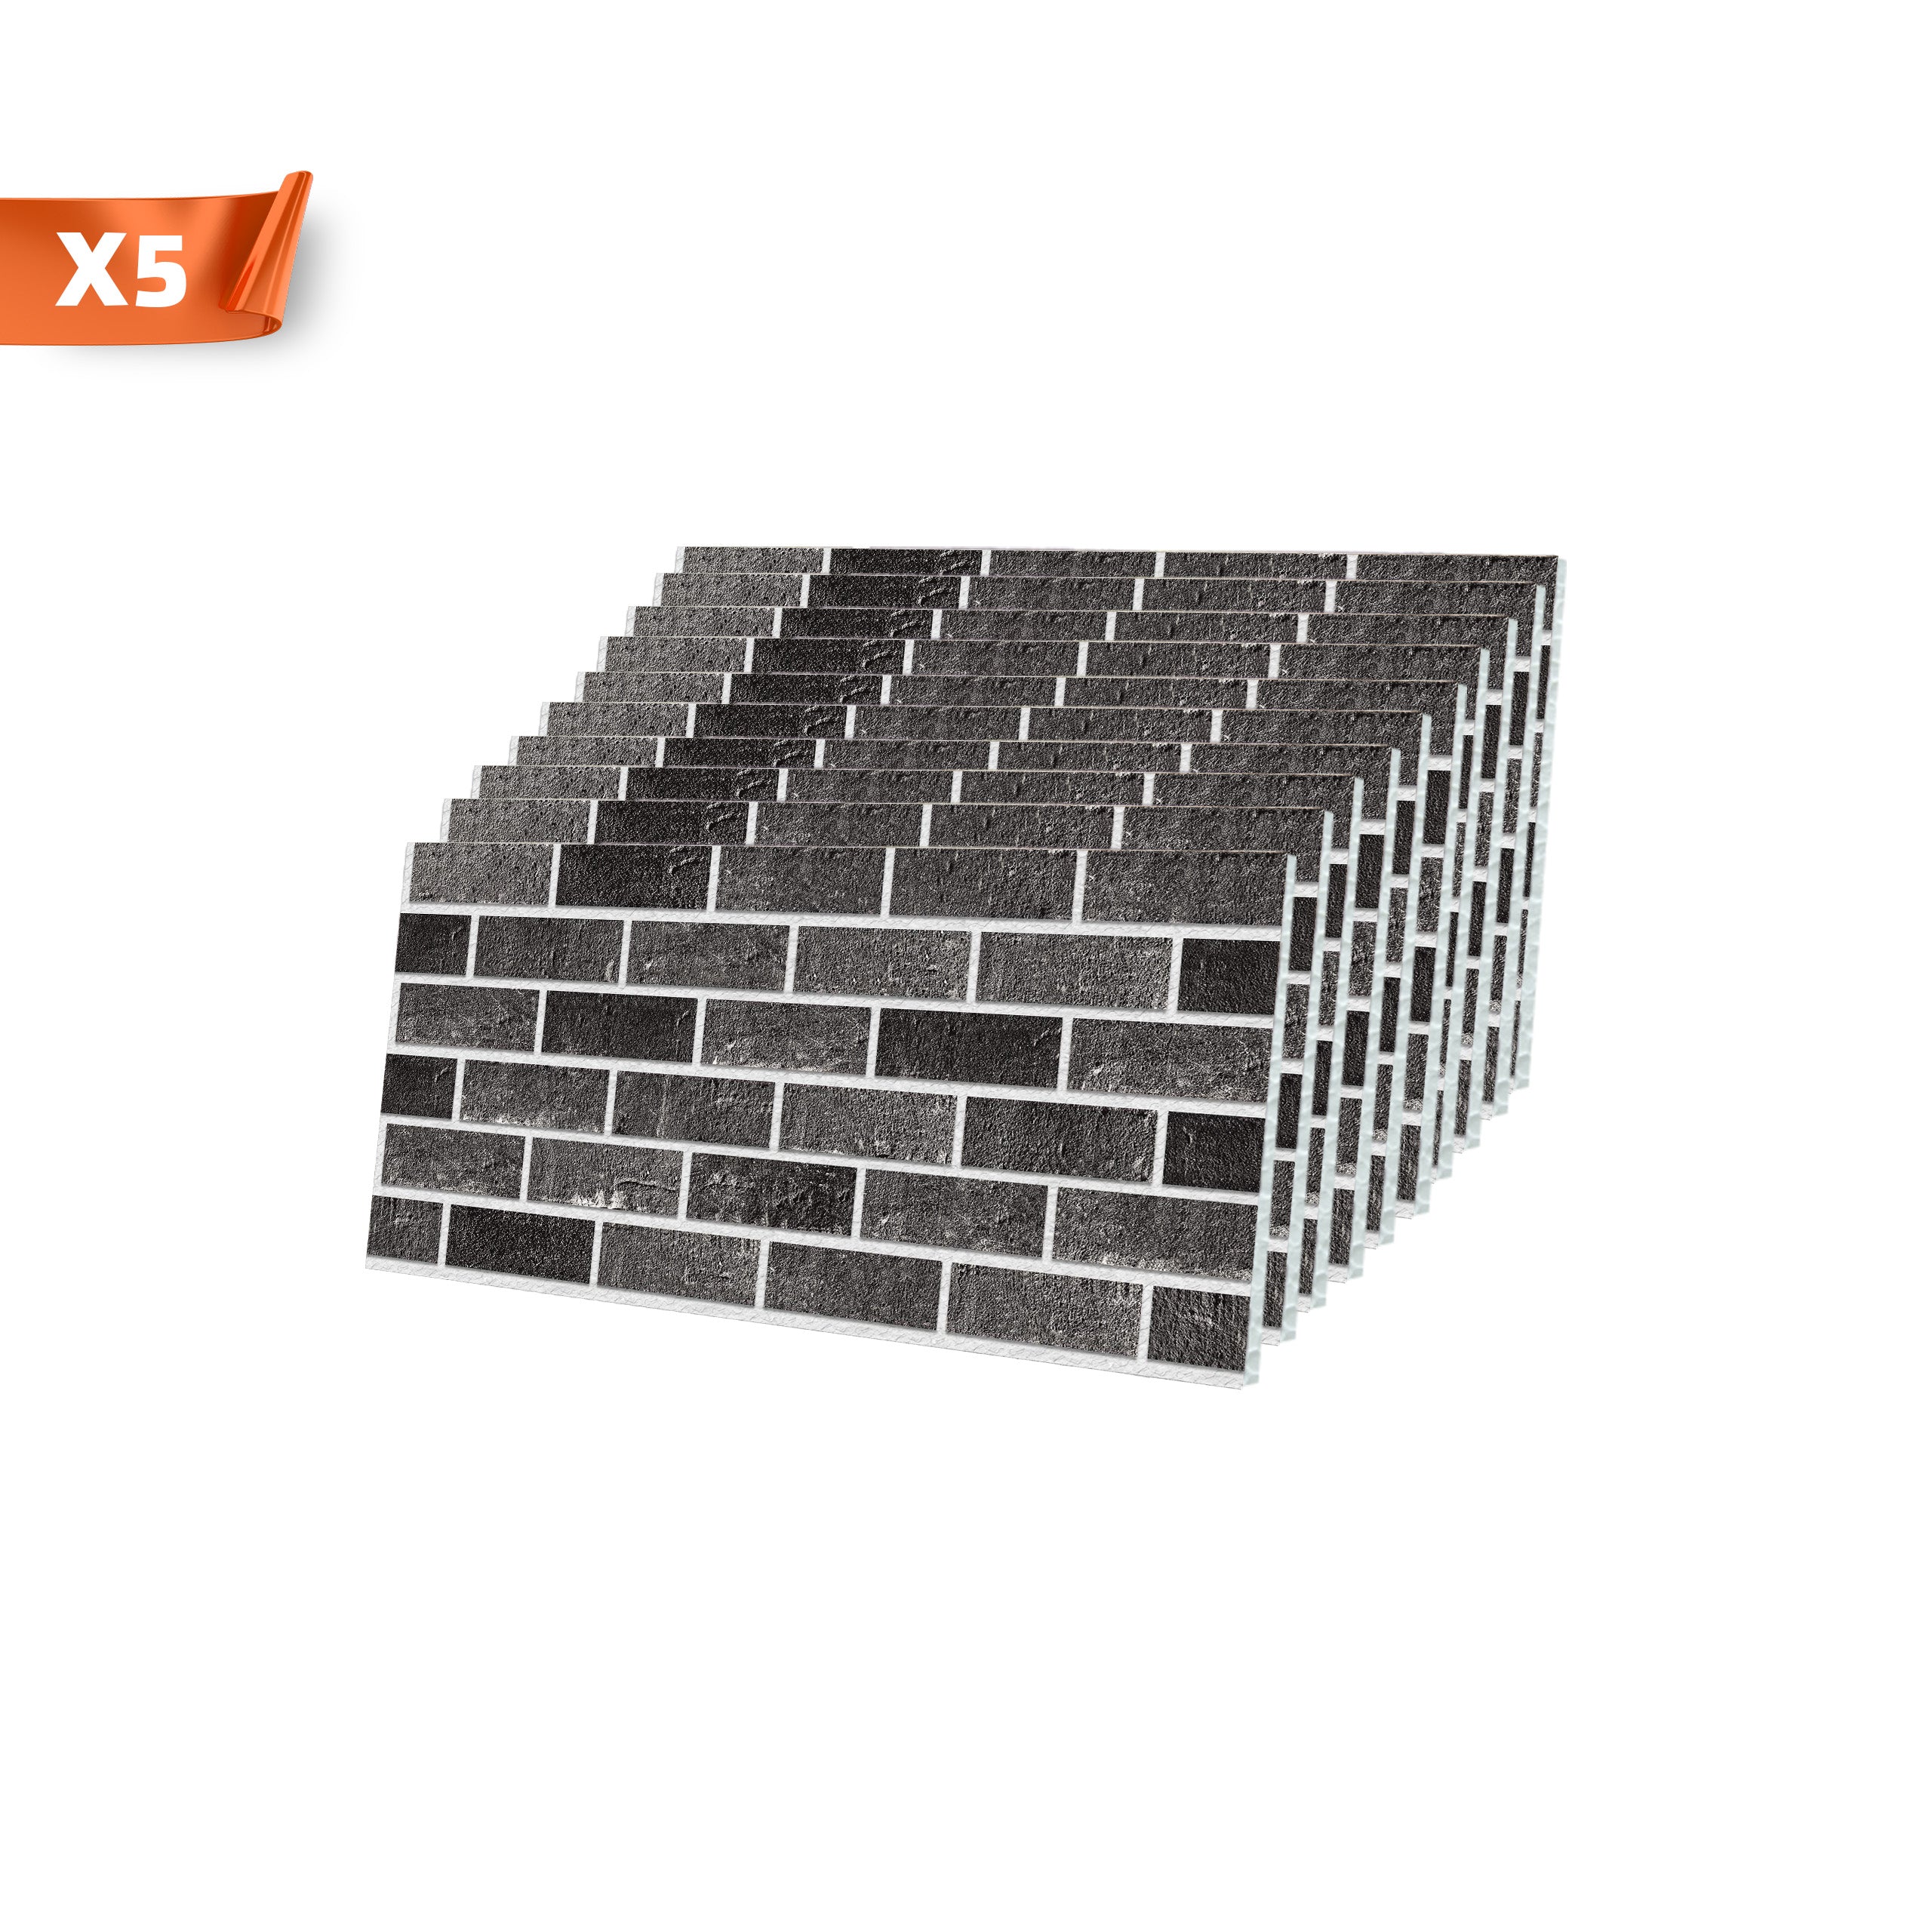 Ash Smoke T-1905 3D Brick Mixed Wall Panels